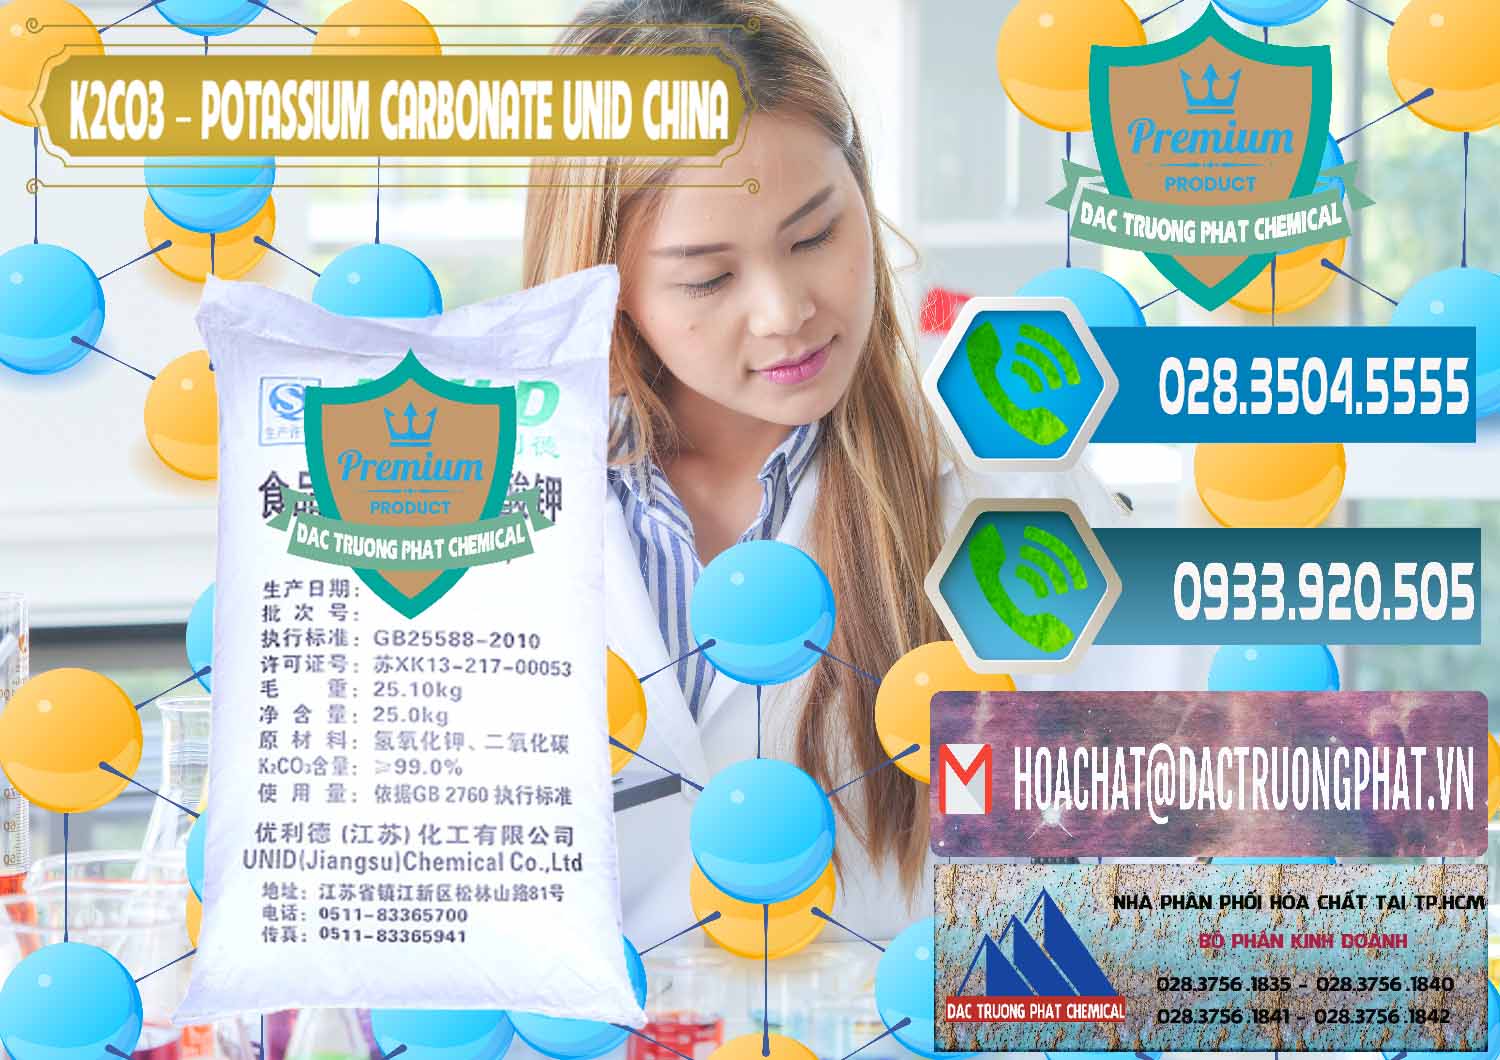 Cty chuyên cung ứng _ bán K2Co3 – Potassium Carbonate UNID Trung Quốc China - 0475 - Công ty chuyên bán và cung cấp hóa chất tại TP.HCM - congtyhoachat.net